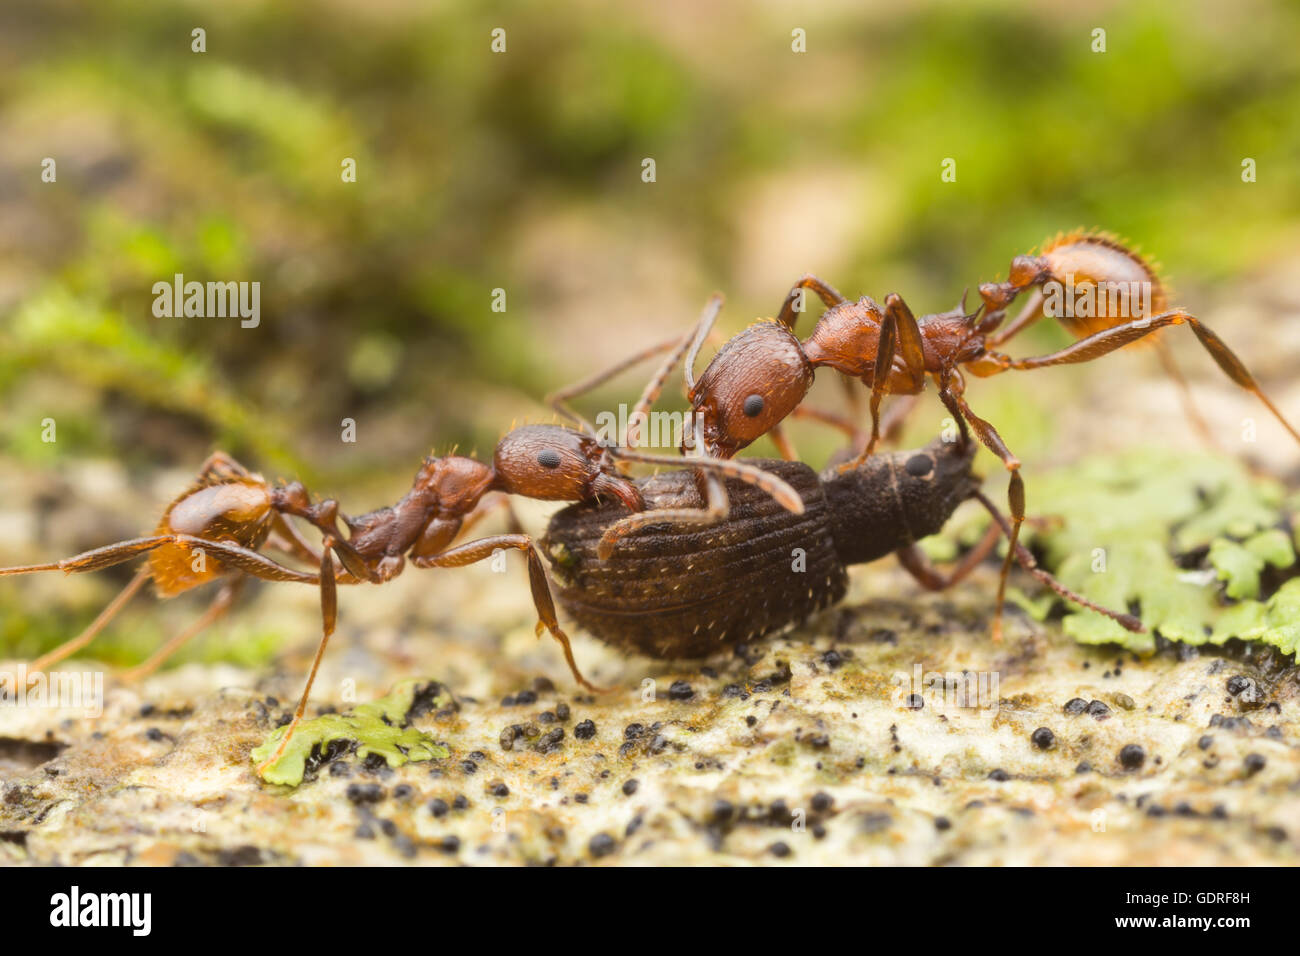 Les travailleurs de Ant (Aphaenogaster fulva), cintré, transportent la nourriture récupérée jusqu'à leur nid. Banque D'Images